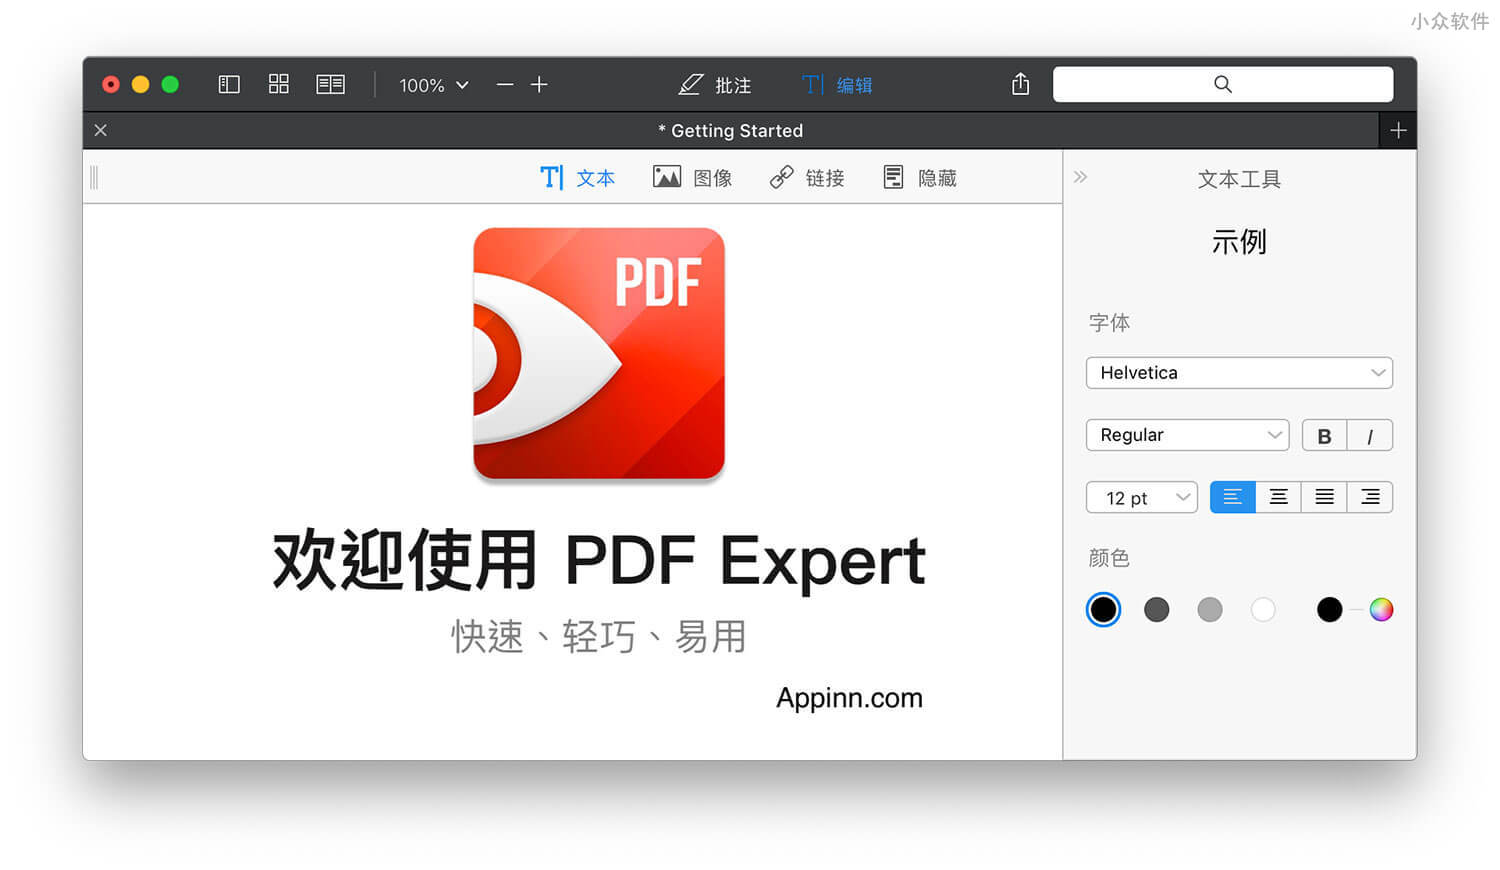 全能 PDF 阅读/编辑工具 PDF Expert 涨价前的最后一次 5 折促销 [macOS]